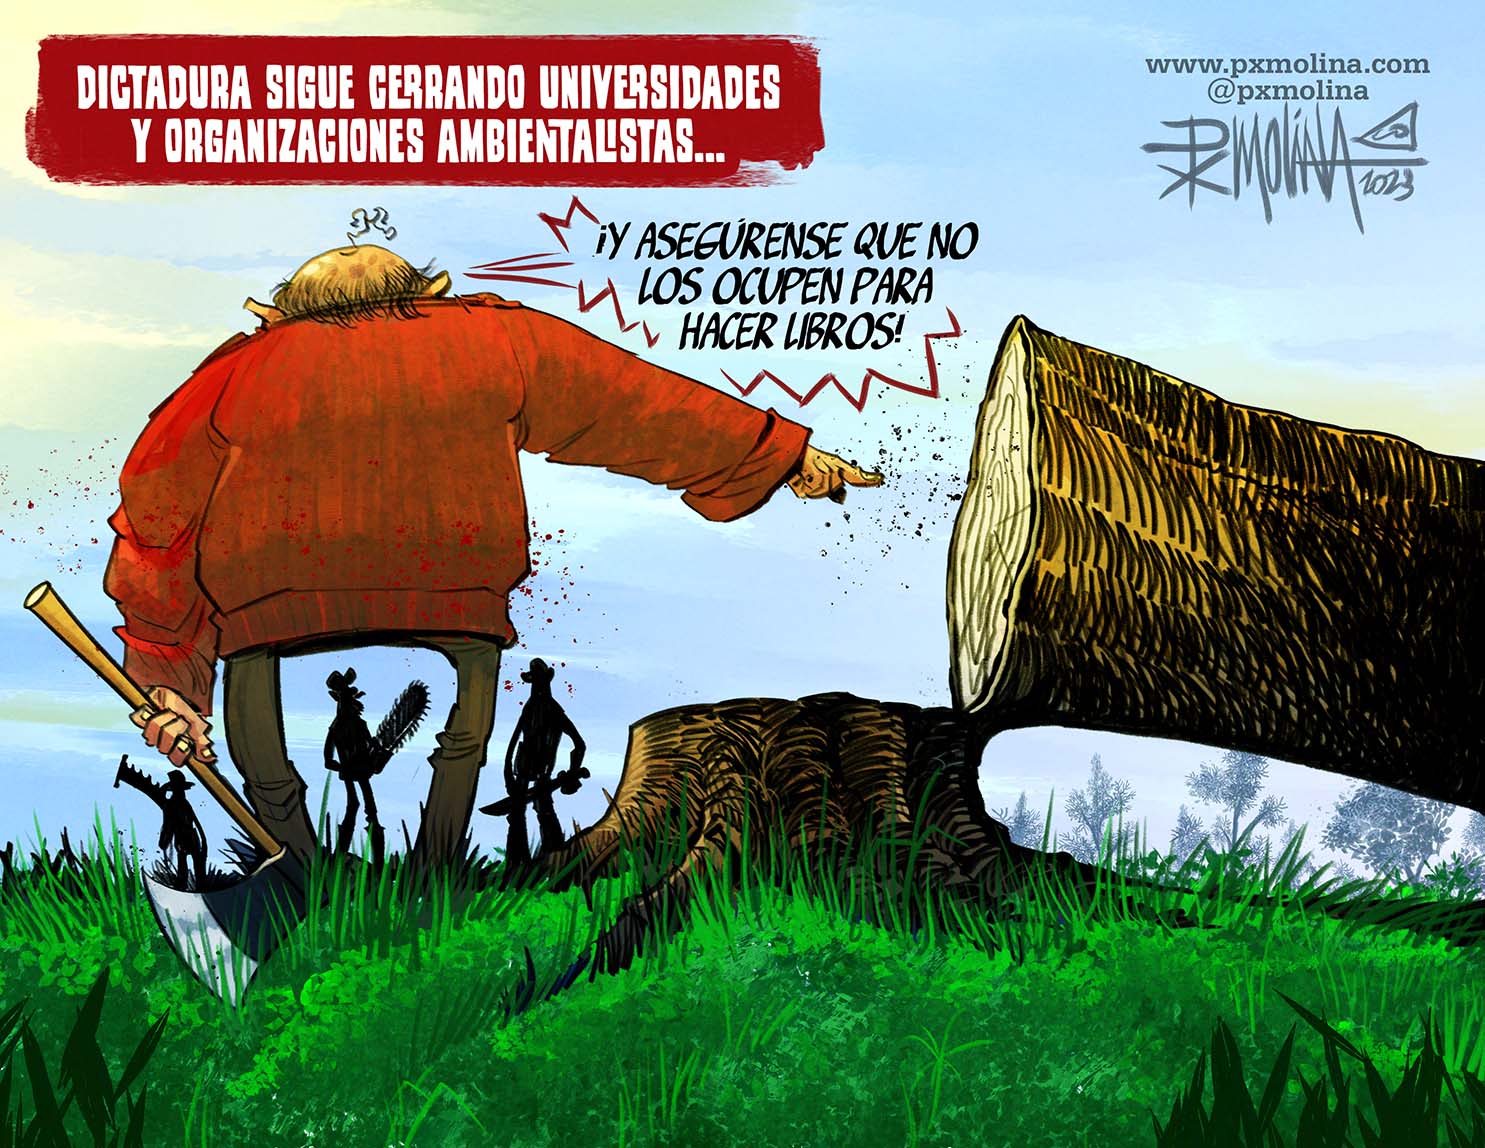 Dictadura cierra universidades y organizaciones ambientalistas